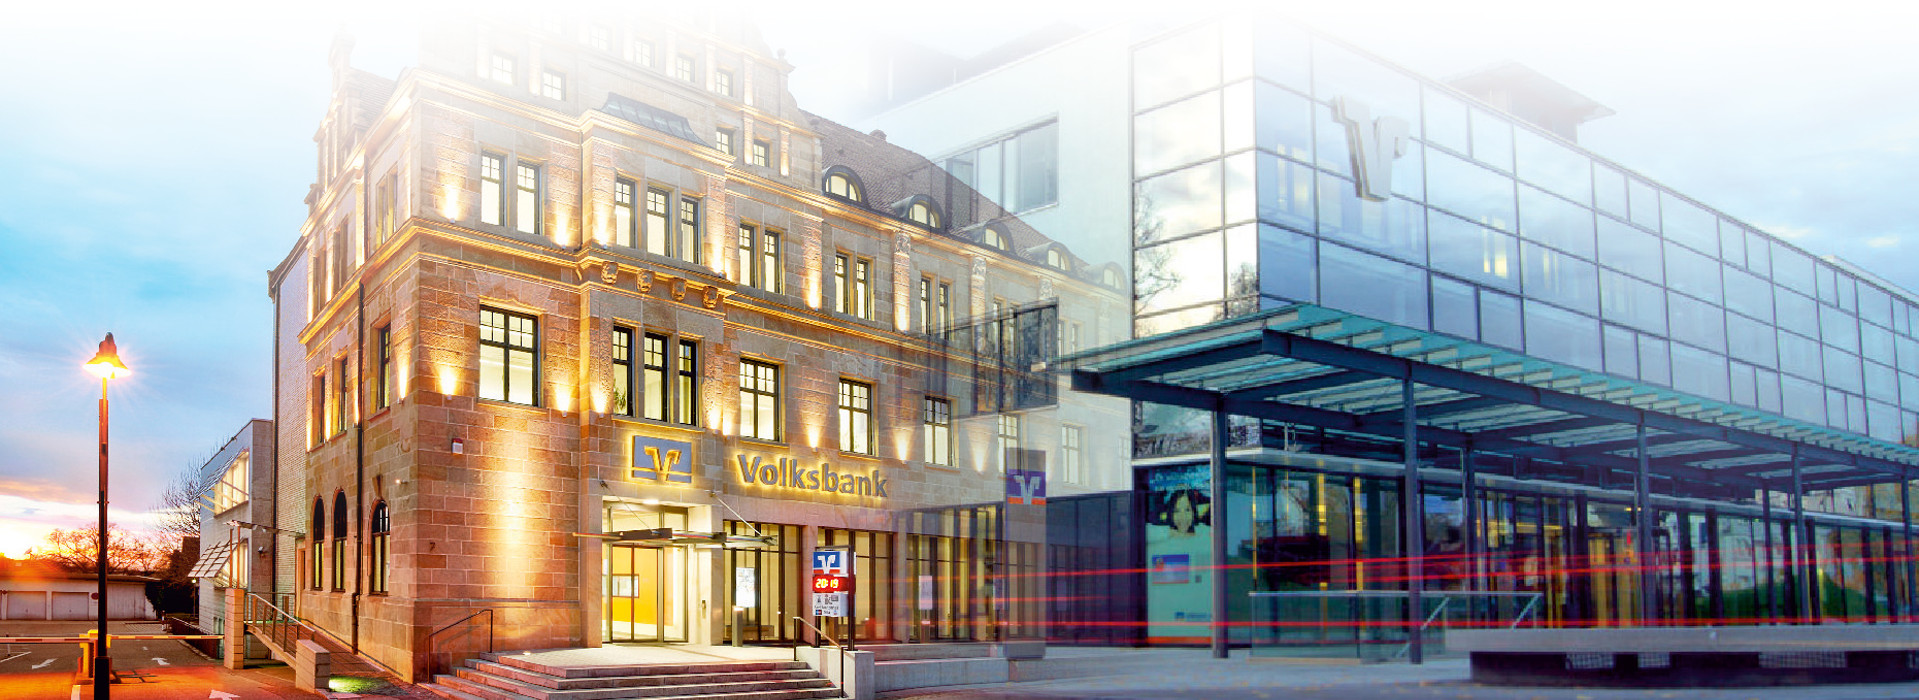 Bildmontage der beiden Hauptsitze von "Volksbank eG - Die Gestalterbank" in Offenburg (links) und Villingen (rechts). Dir ursprünglichen Bilder gehen in der Bildmitte ineinander über.